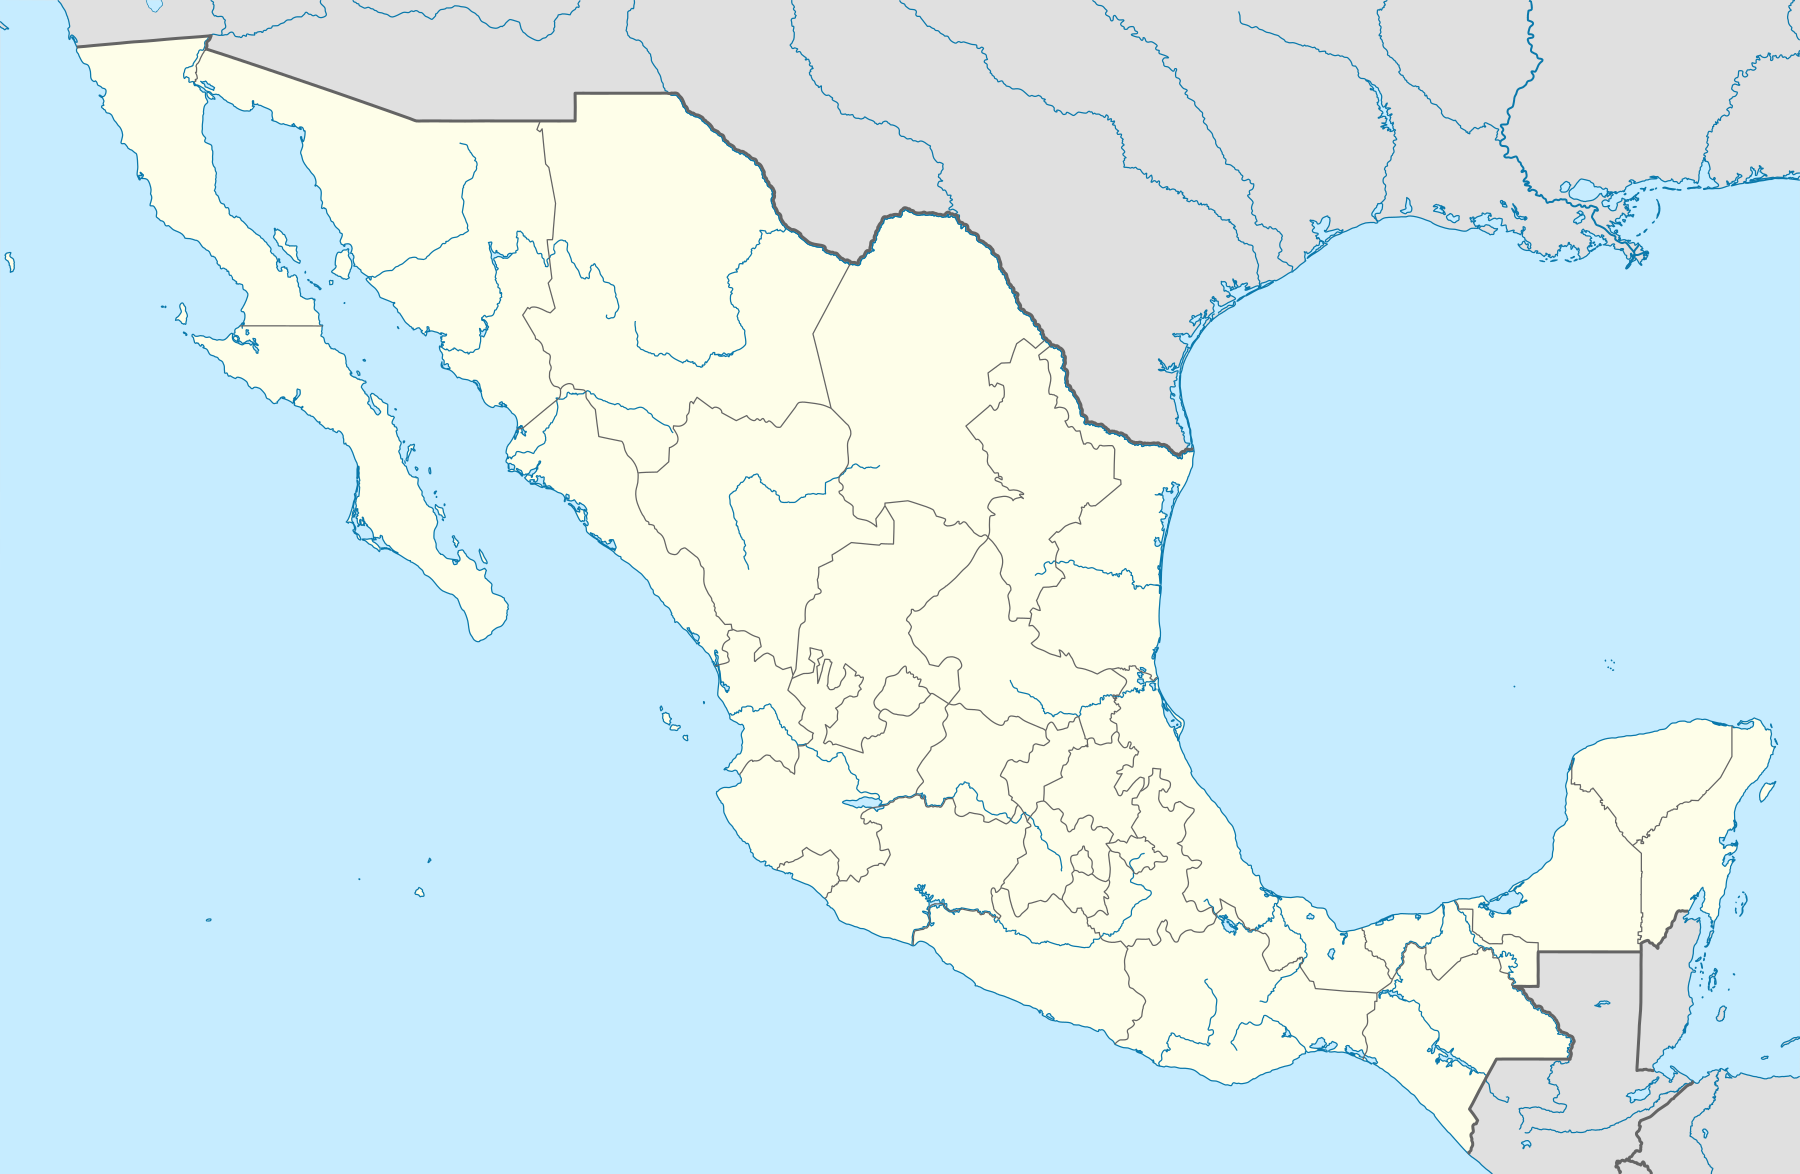 Torneo Apertura 2019 (México) está ubicado en México